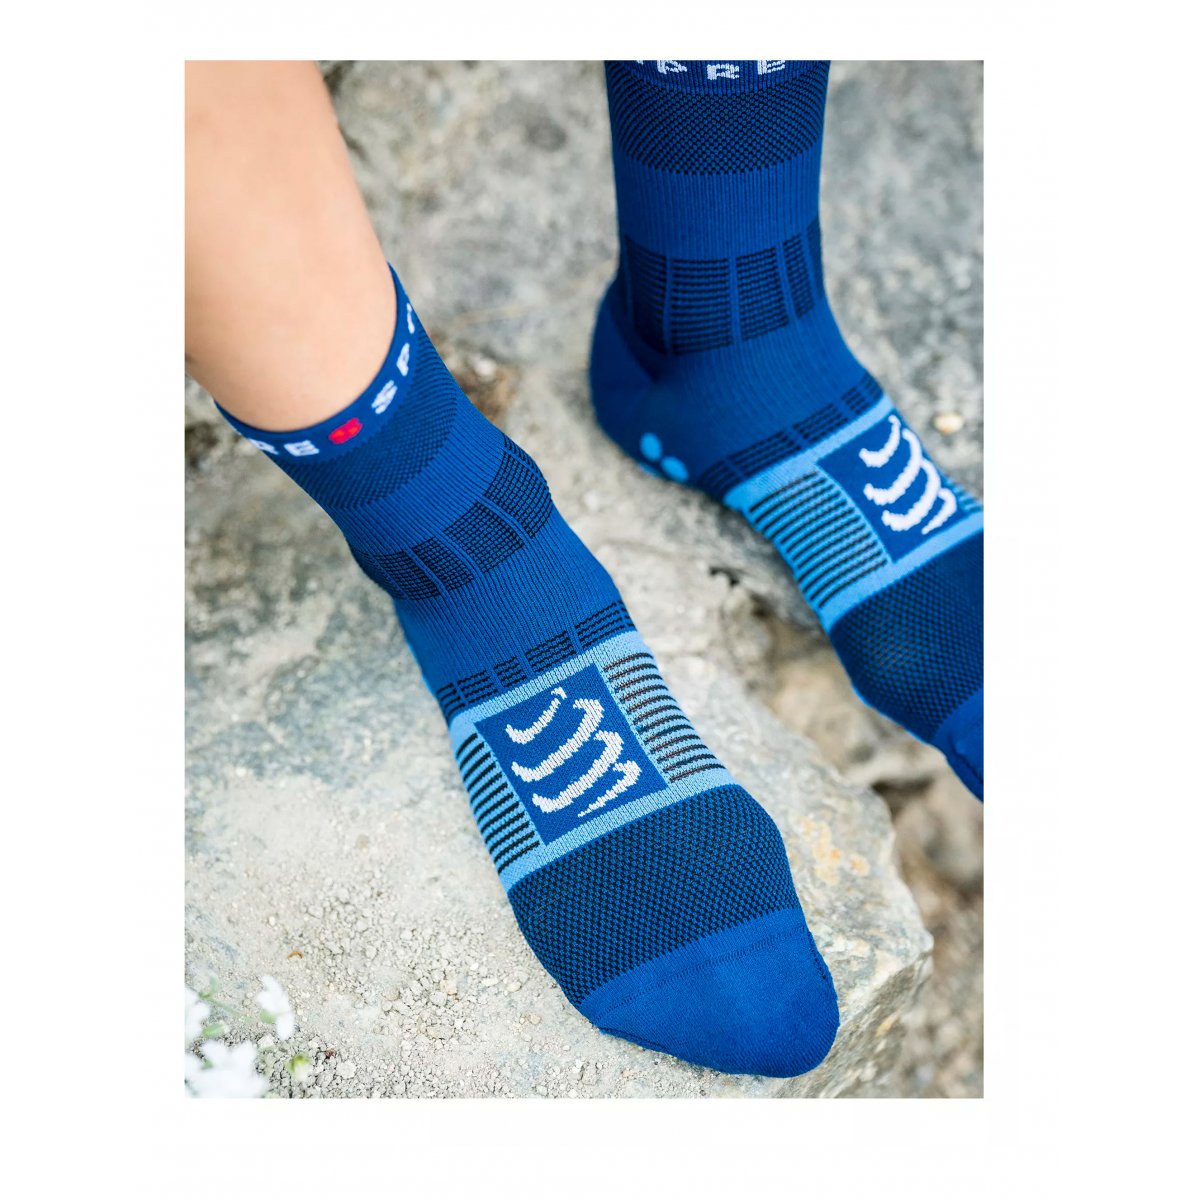 Fast Hiking socks